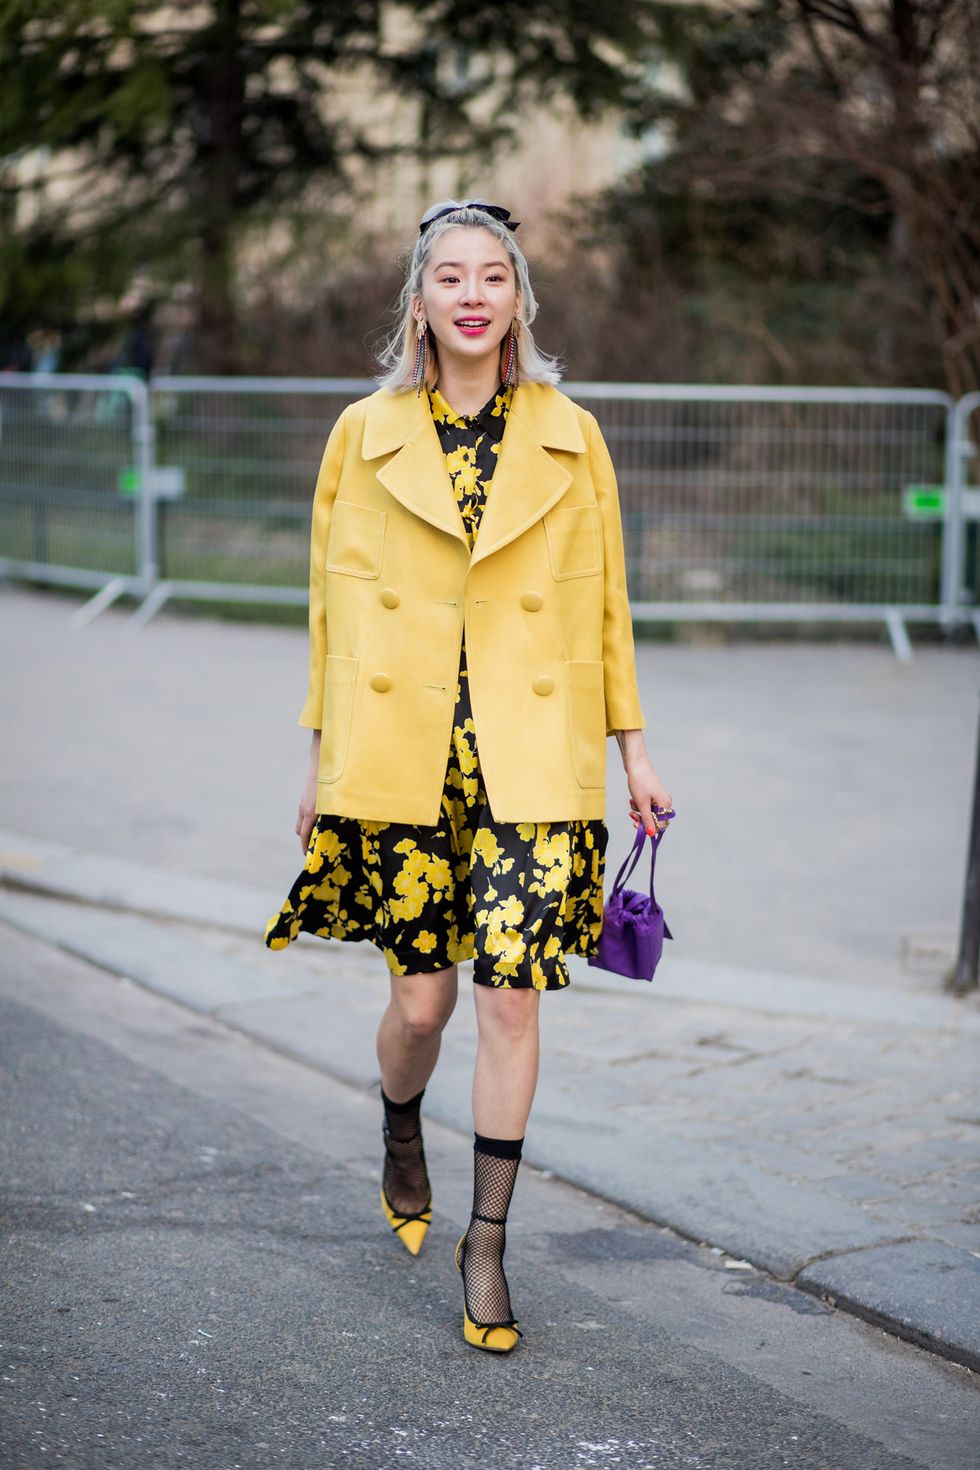 Nel giorno della festa della donna vestirsi di giallo non è un cliché, tanto più che il giallo è il colore di moda per la primavera estate 2018: l'8 marzo caricati di energia positiva con total look in giallo, per vestiti e accessori.